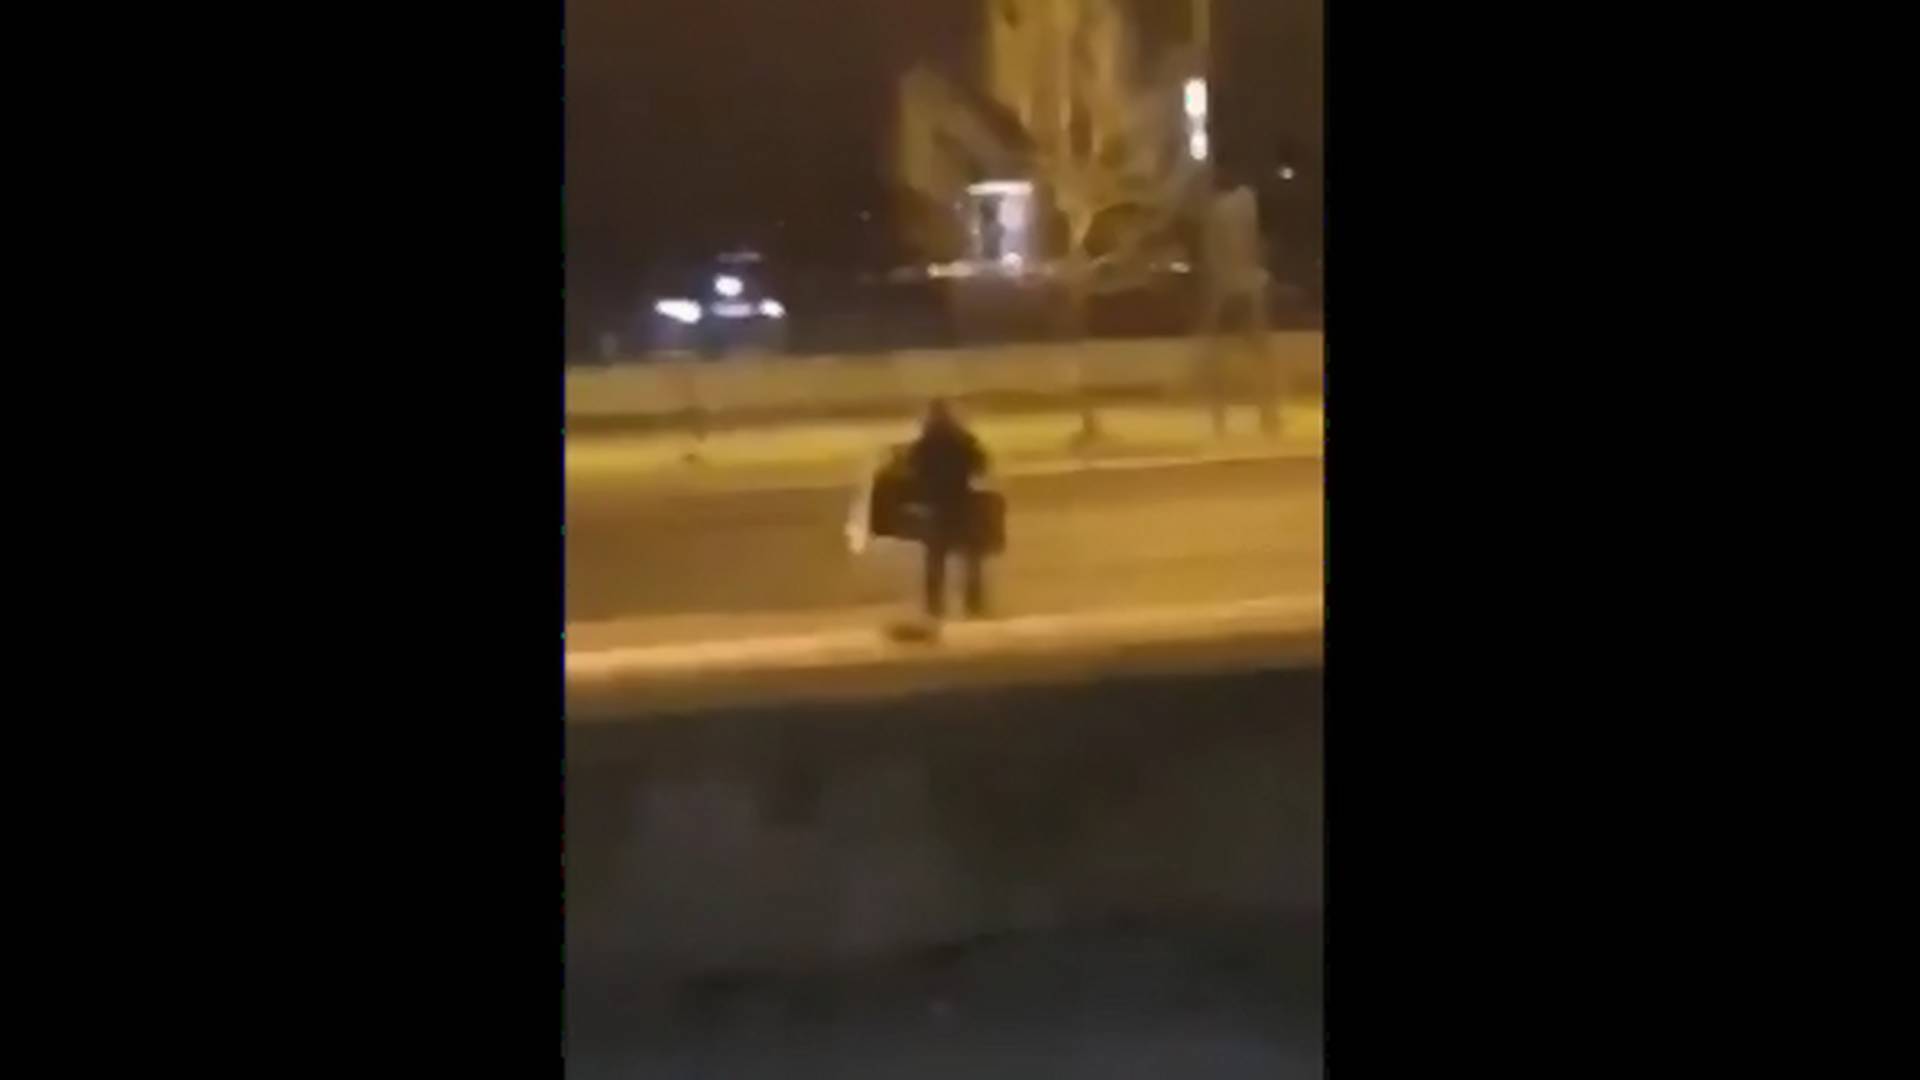 Bezobrazluk: Pogledajte kako se čovek na Sajmu krije od policije za vreme zabrane kretanja